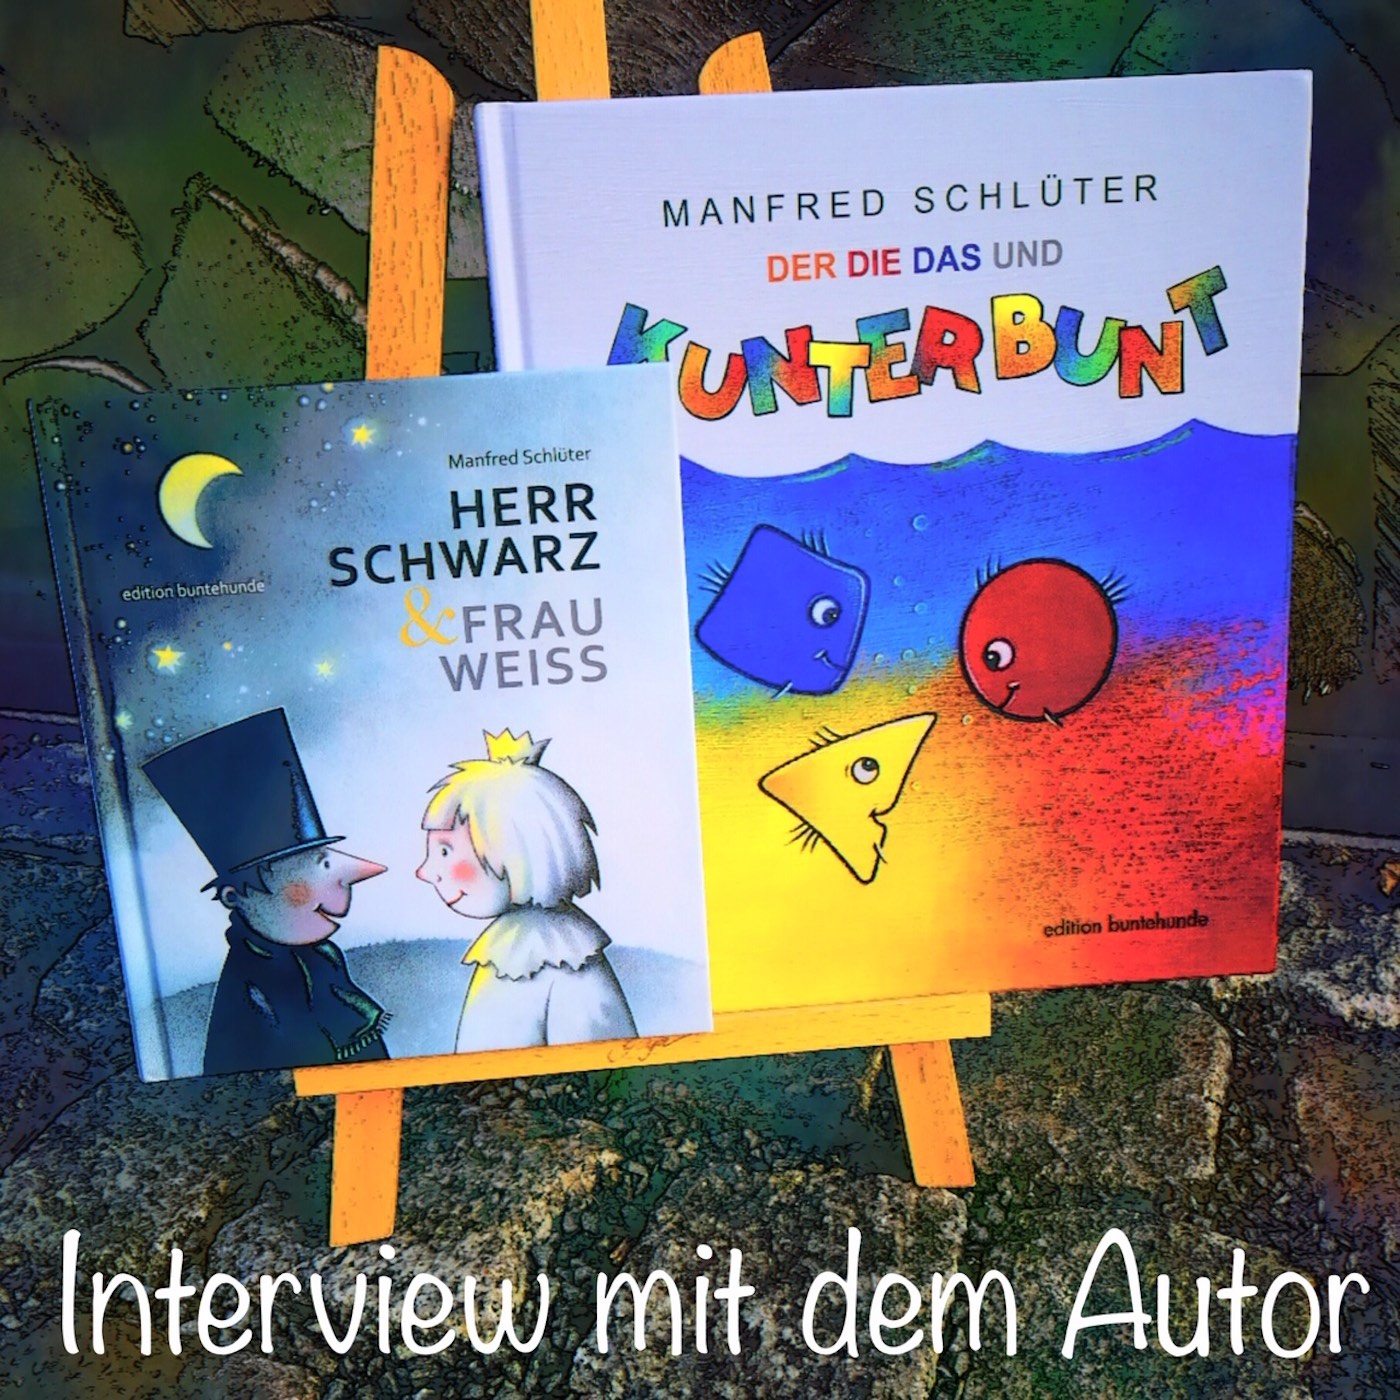 #51 – Interview mit Manfred Schlüter, Autor von ”Der die das und kunterbunt” und vielen anderen Kinderbüchern